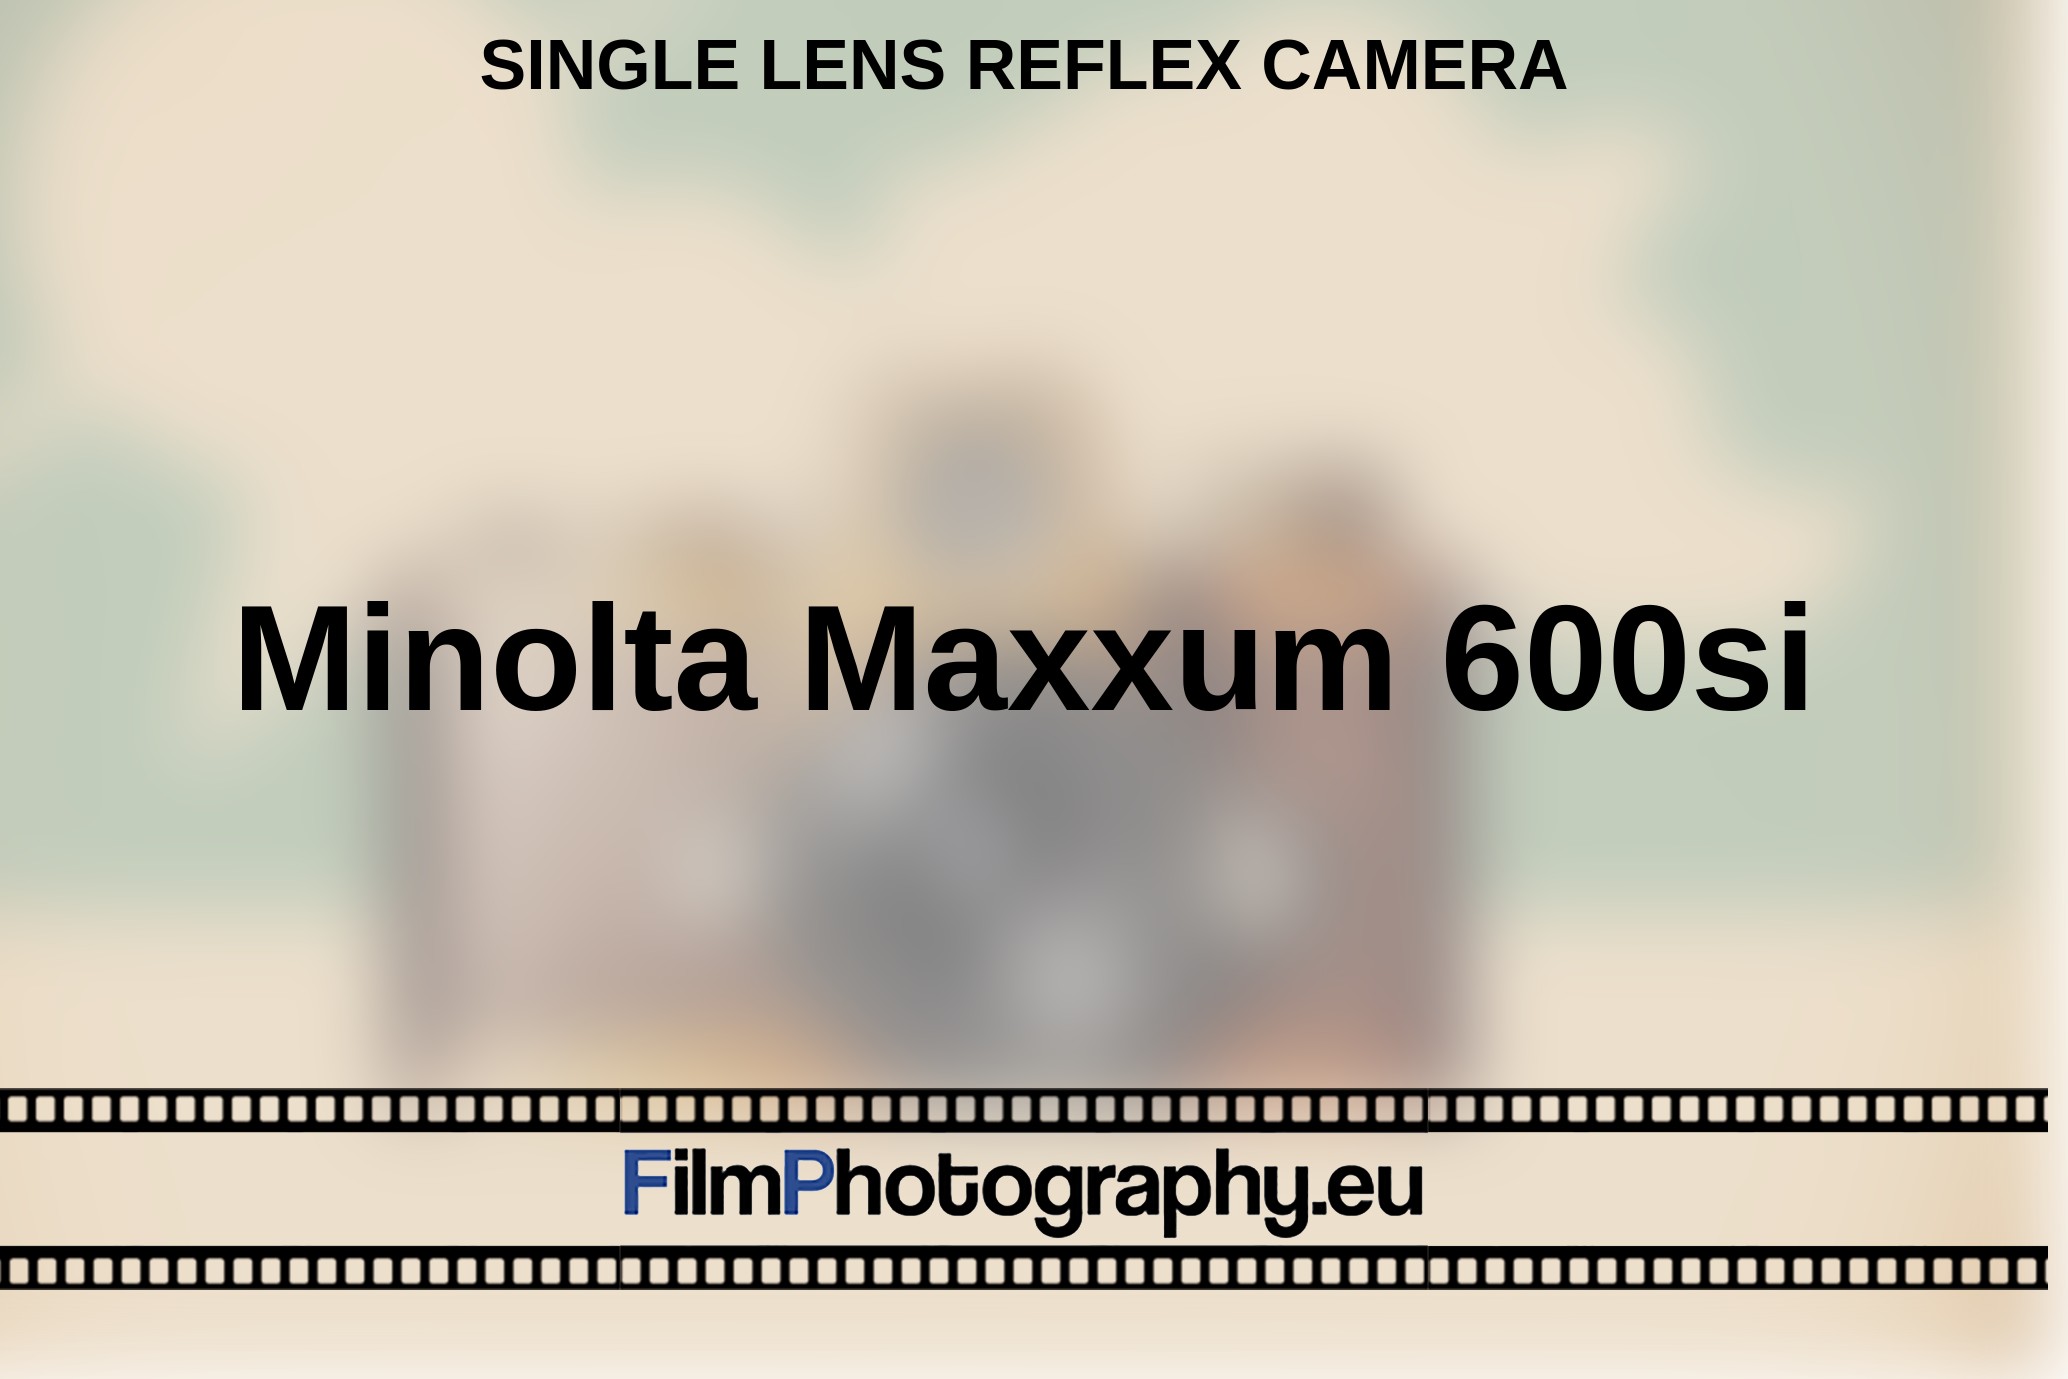 Minolta-Maxxum-600si-single-lens-reflex-camera-bnv.jpg